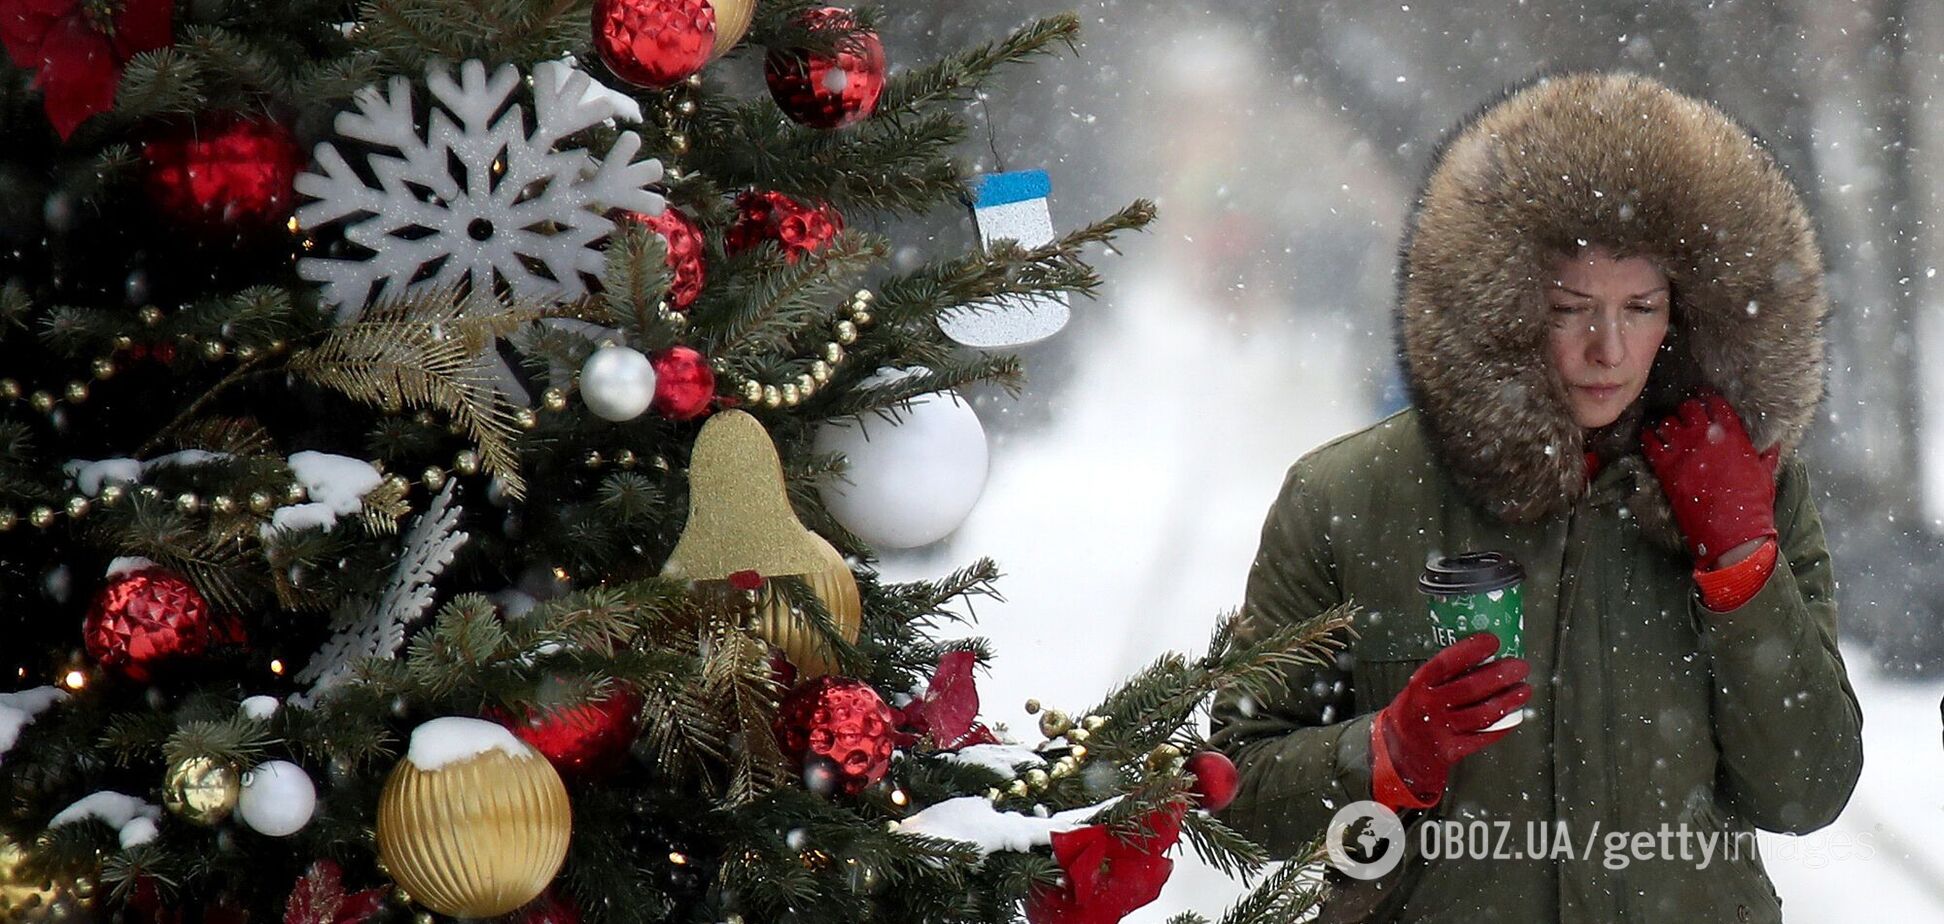 Погода в Украине на Новый год и Рождество